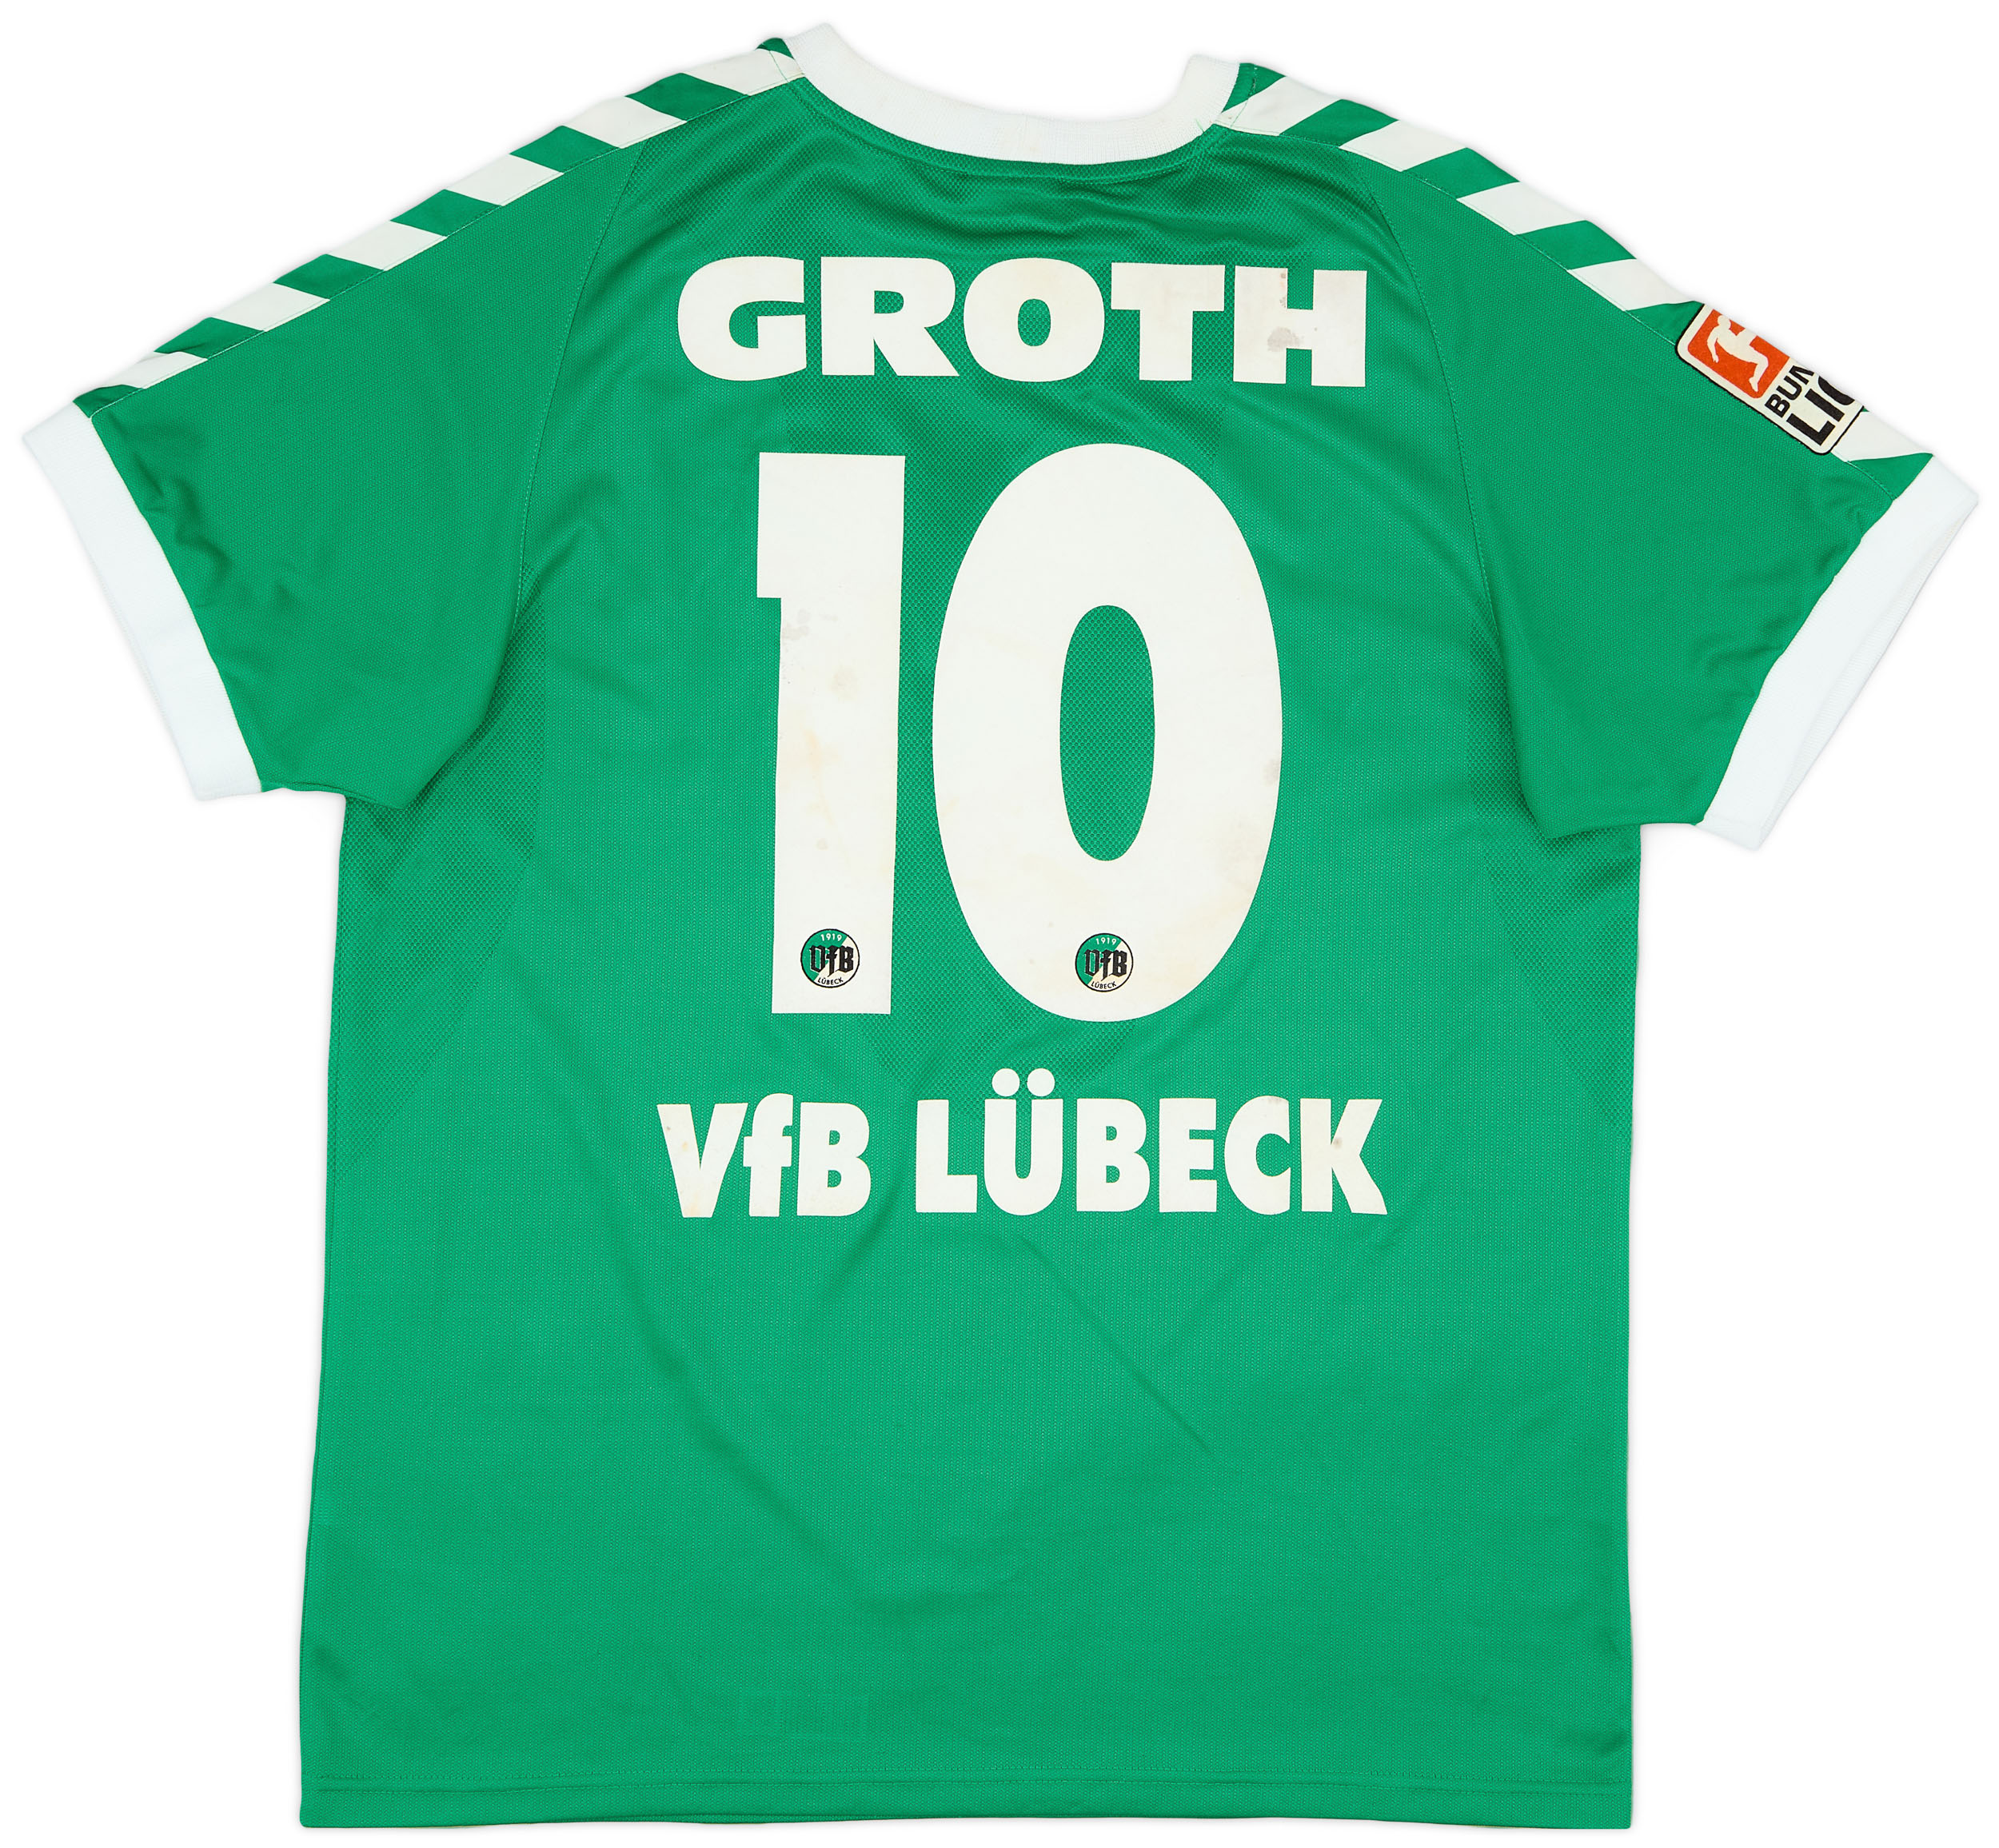 VfB Lübeck  home forma (Original)